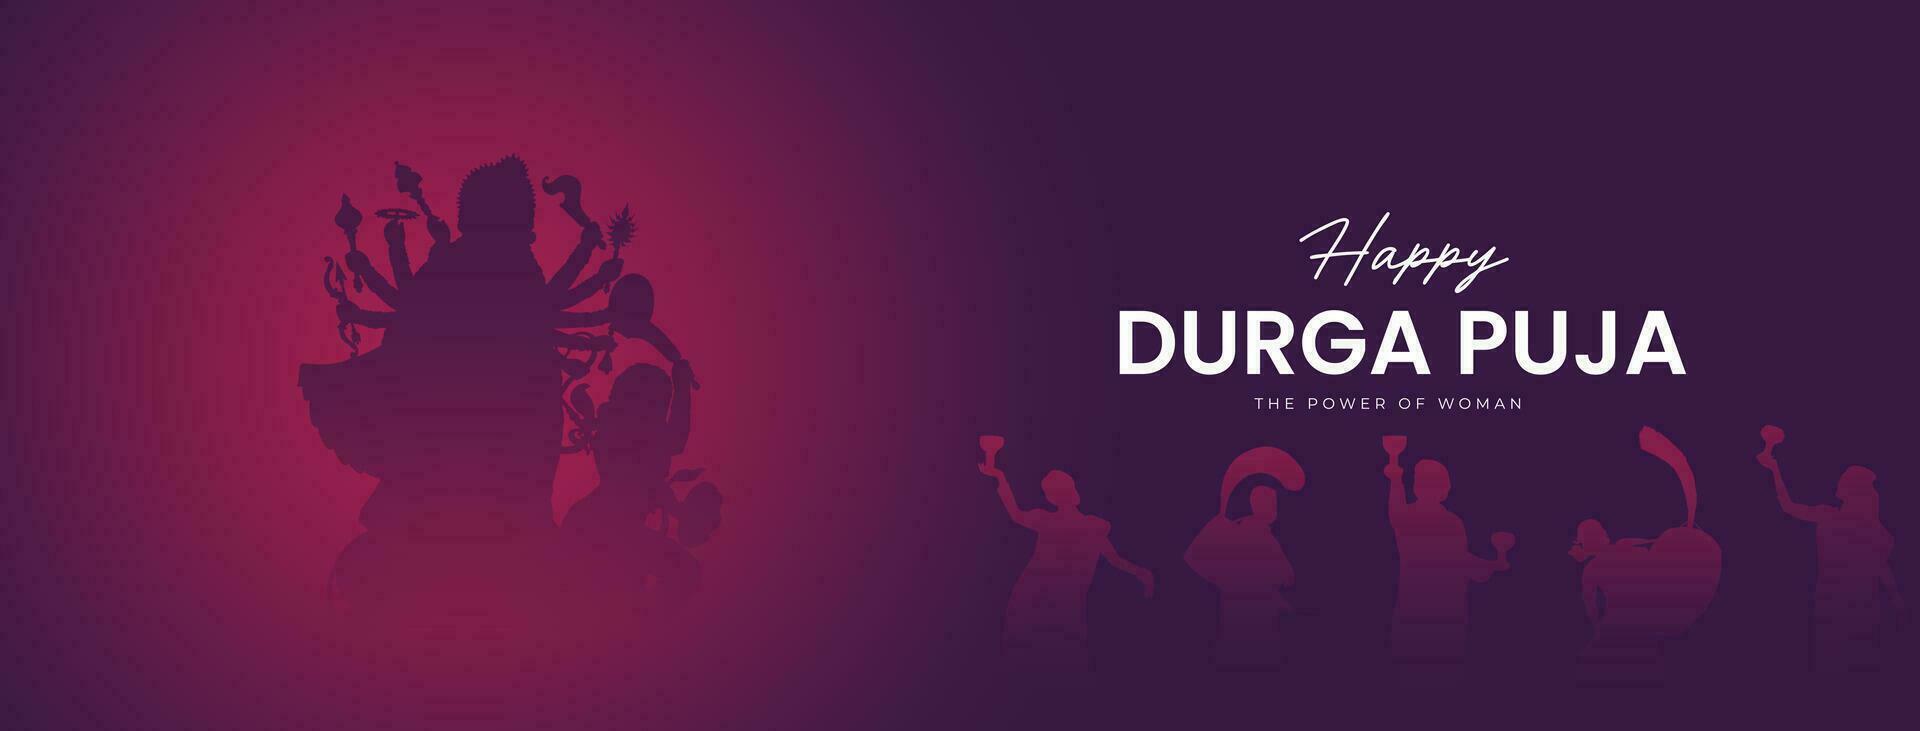 diosa maa Durga cara en contento Durga puya, dussehra, y navratri celebracion concepto para web bandera, póster, social medios de comunicación correo, y volantes publicidad vector